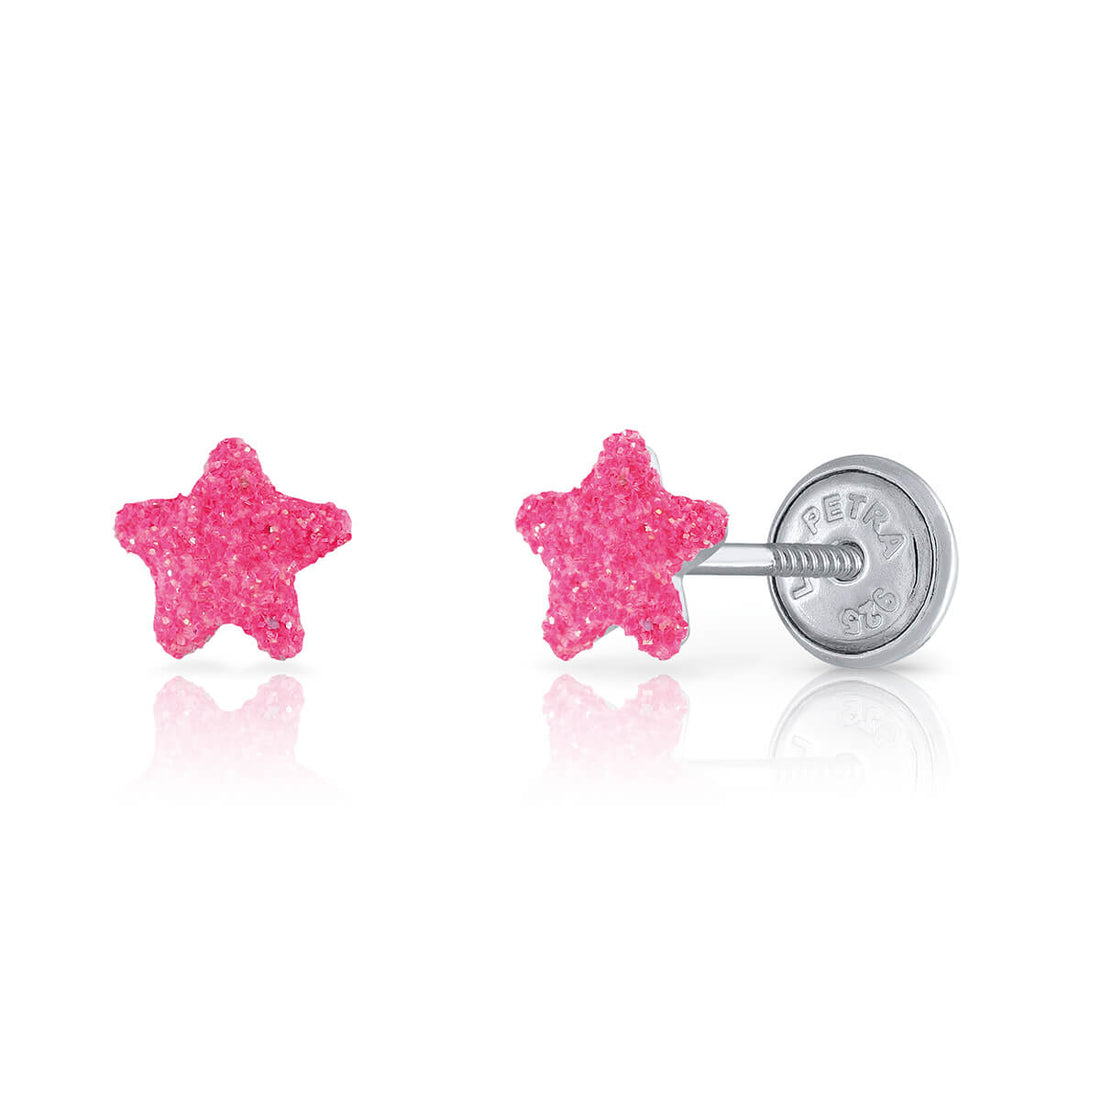 Zilveren kinderoorbellen: Roze ster met schroefsluiting (Lapetra)